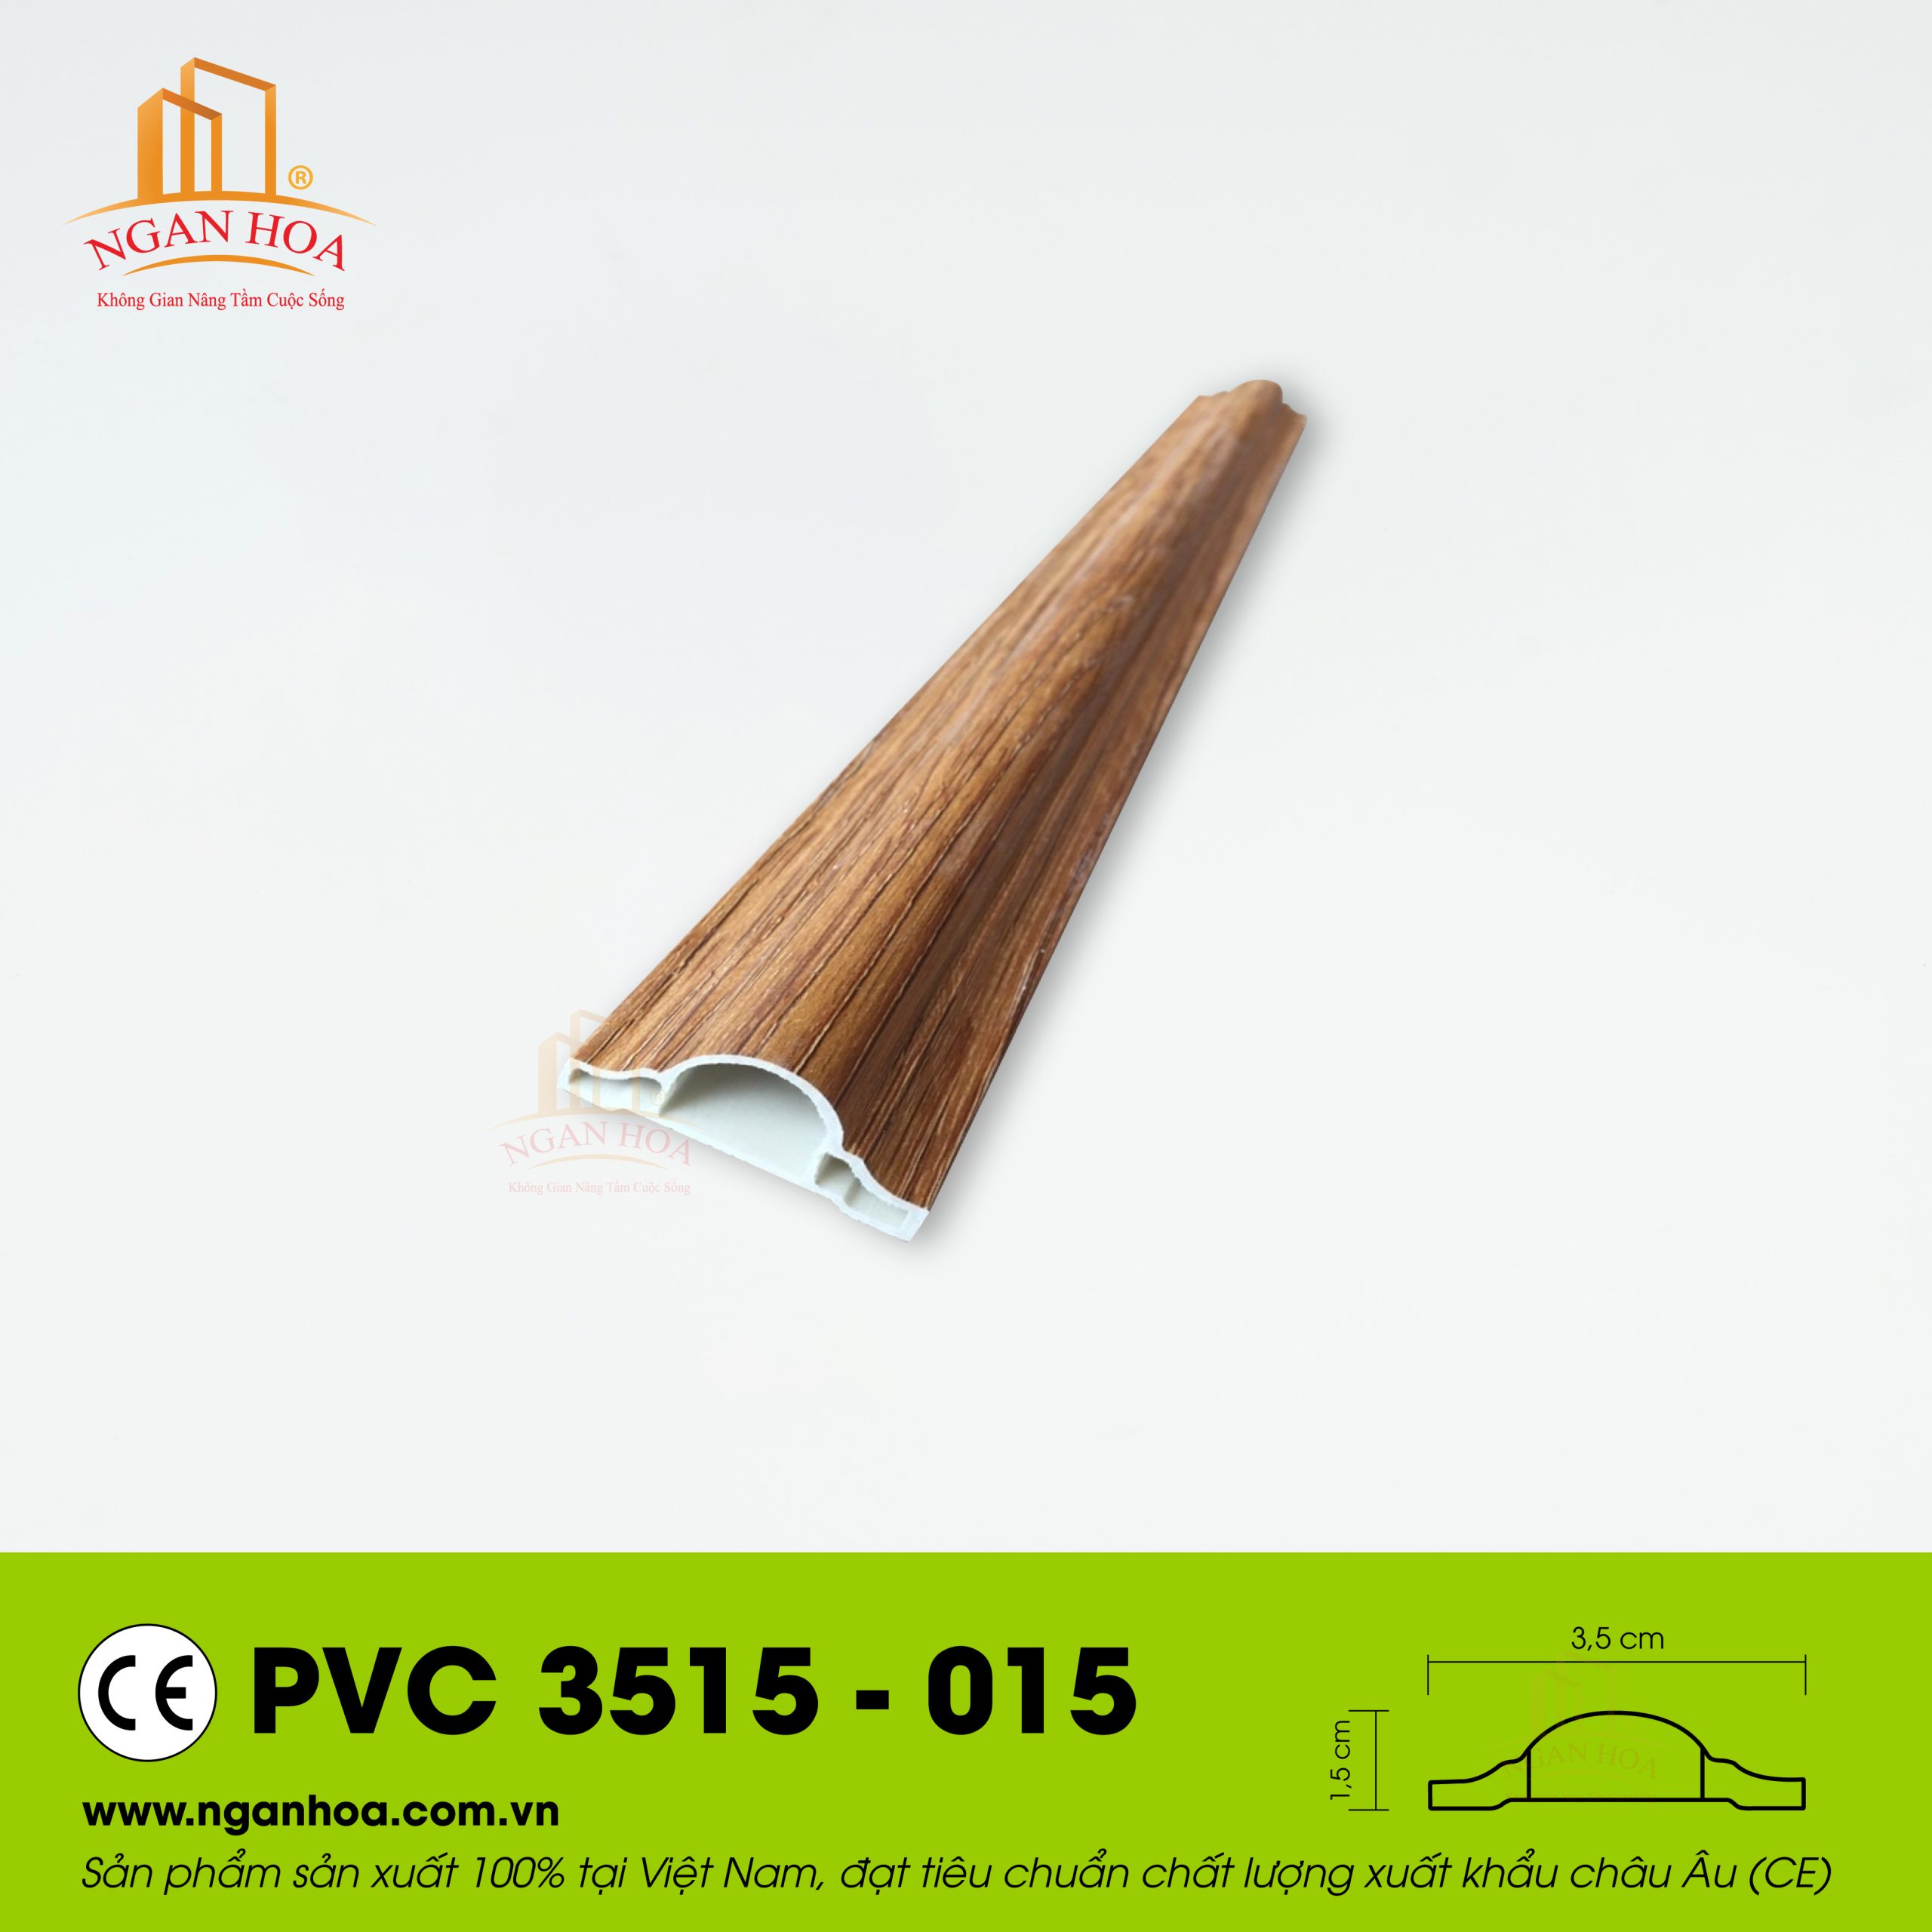 PVC 3515 015 scaled